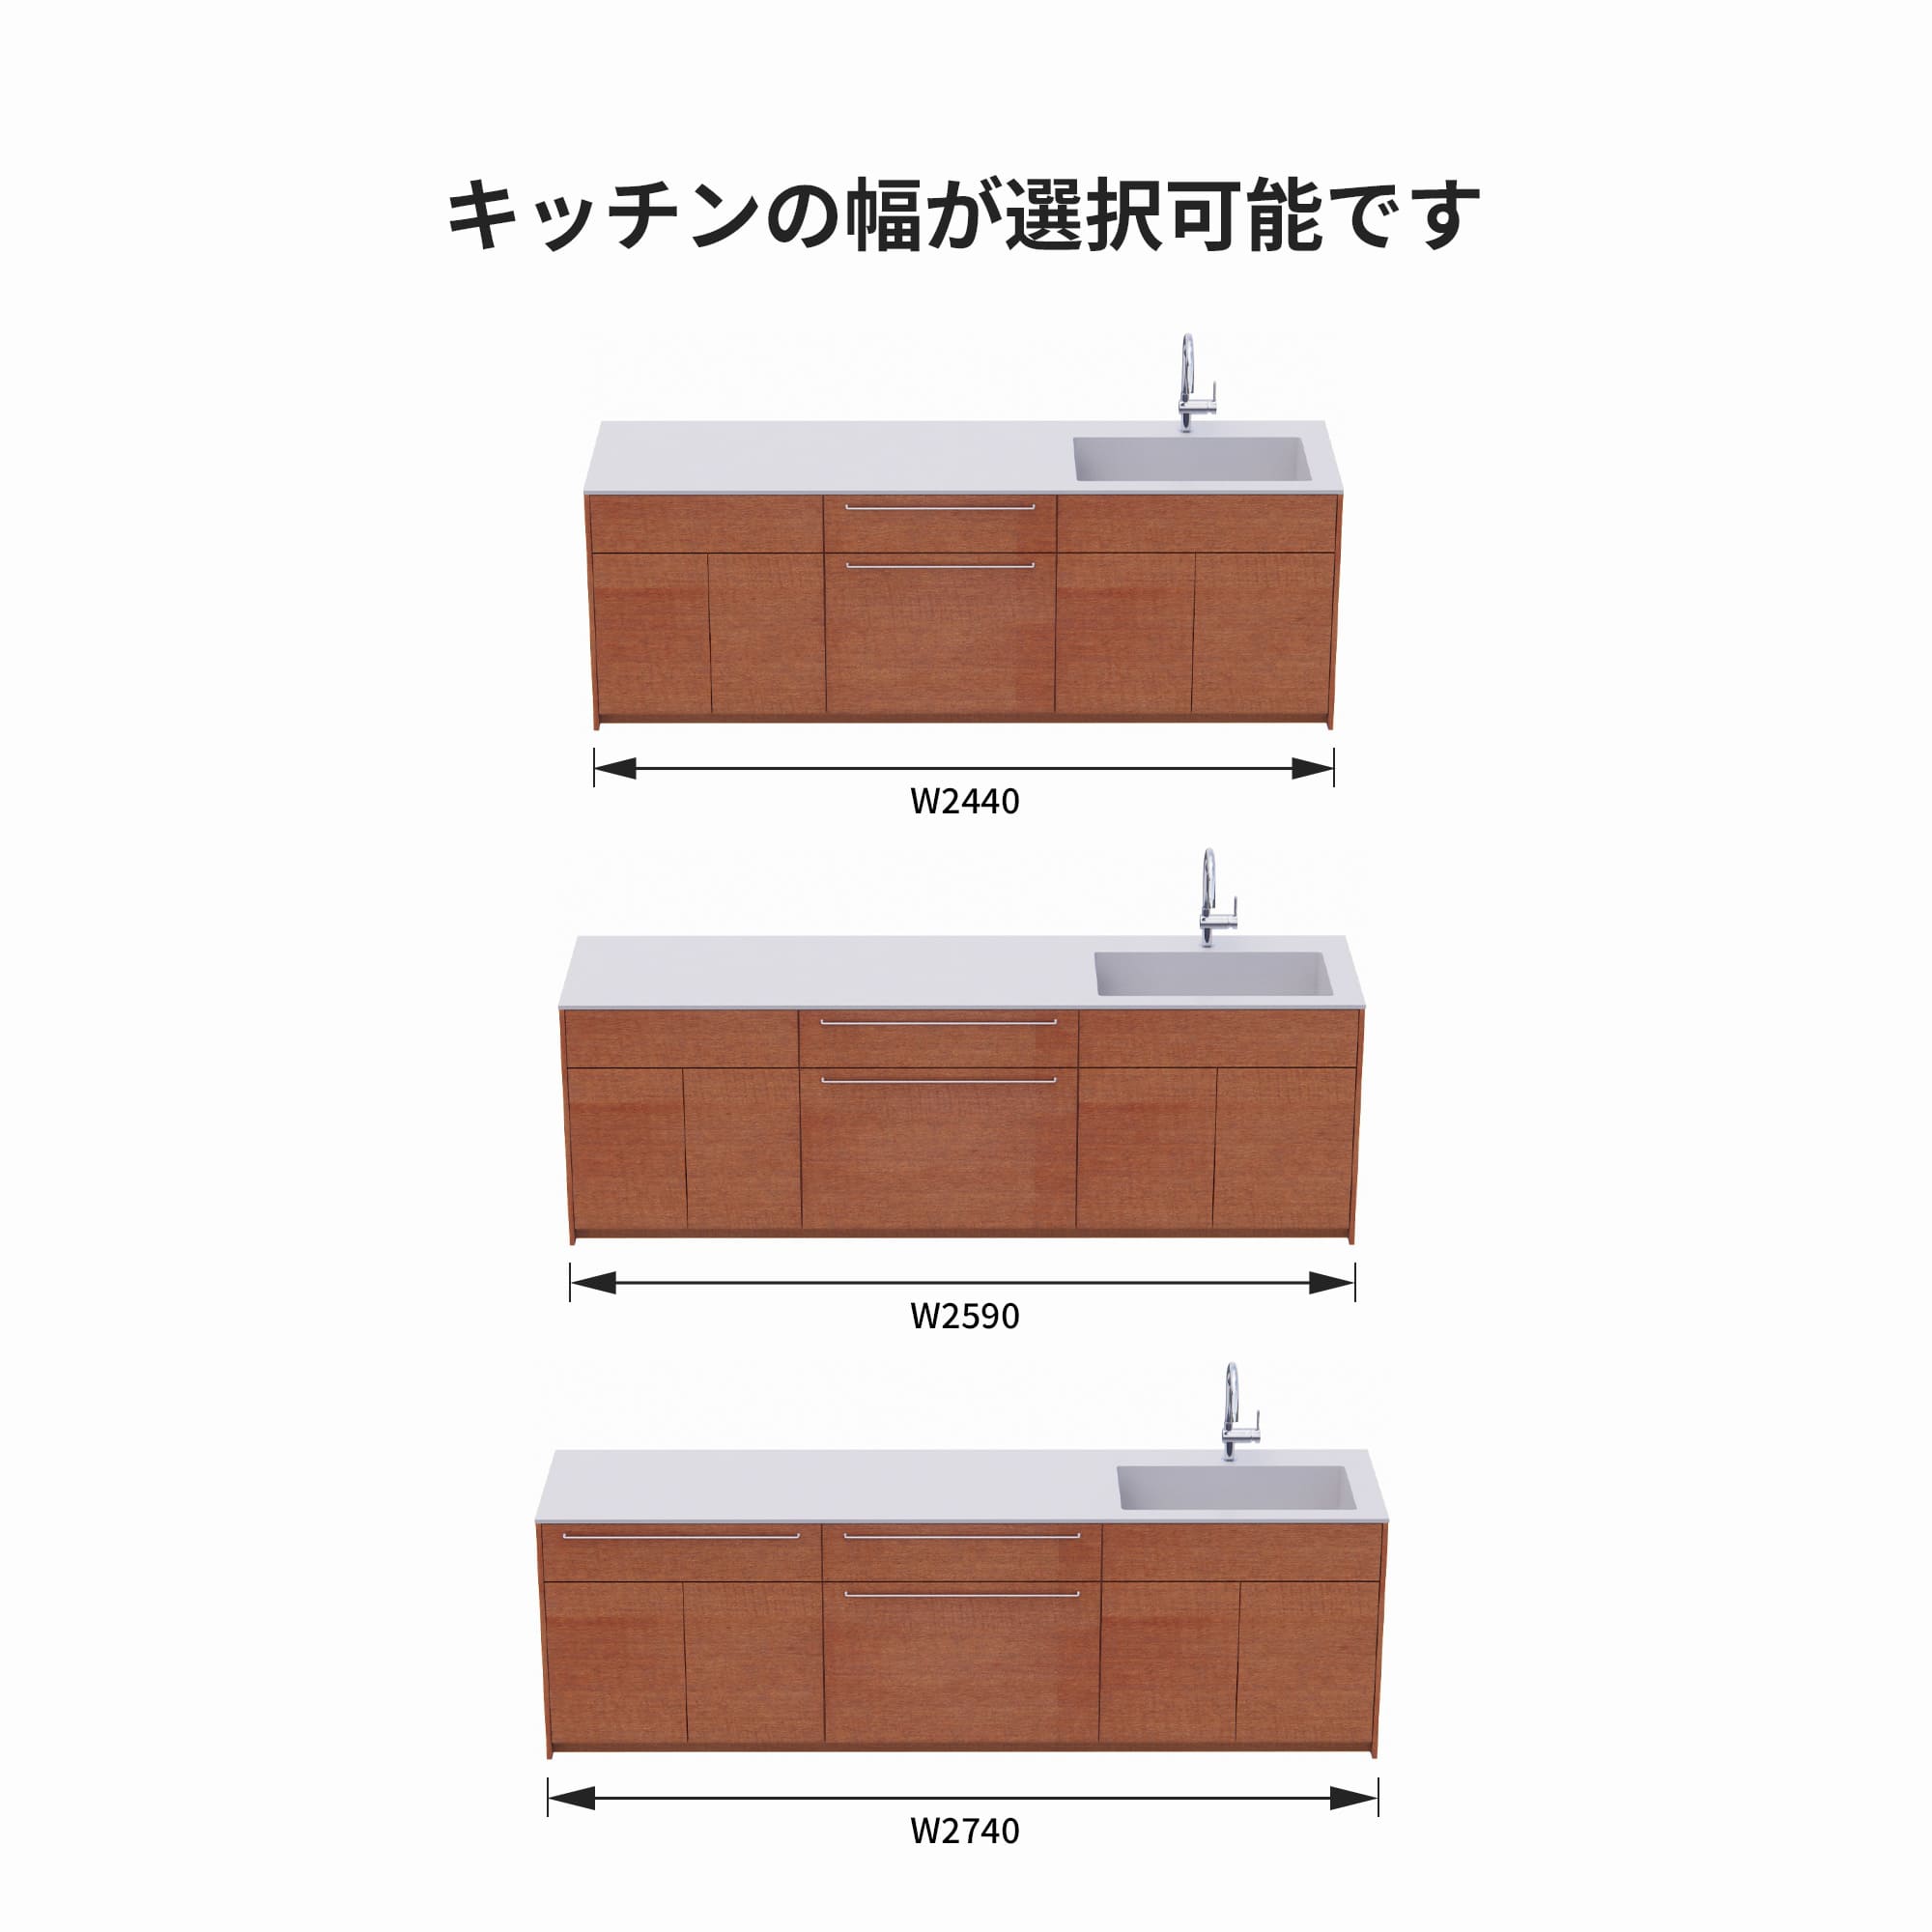 木製システムキッチン 壁付け型 W2440～2740・コンロなし / オーブンなし / 食洗機なし KB-KC022-24-G183